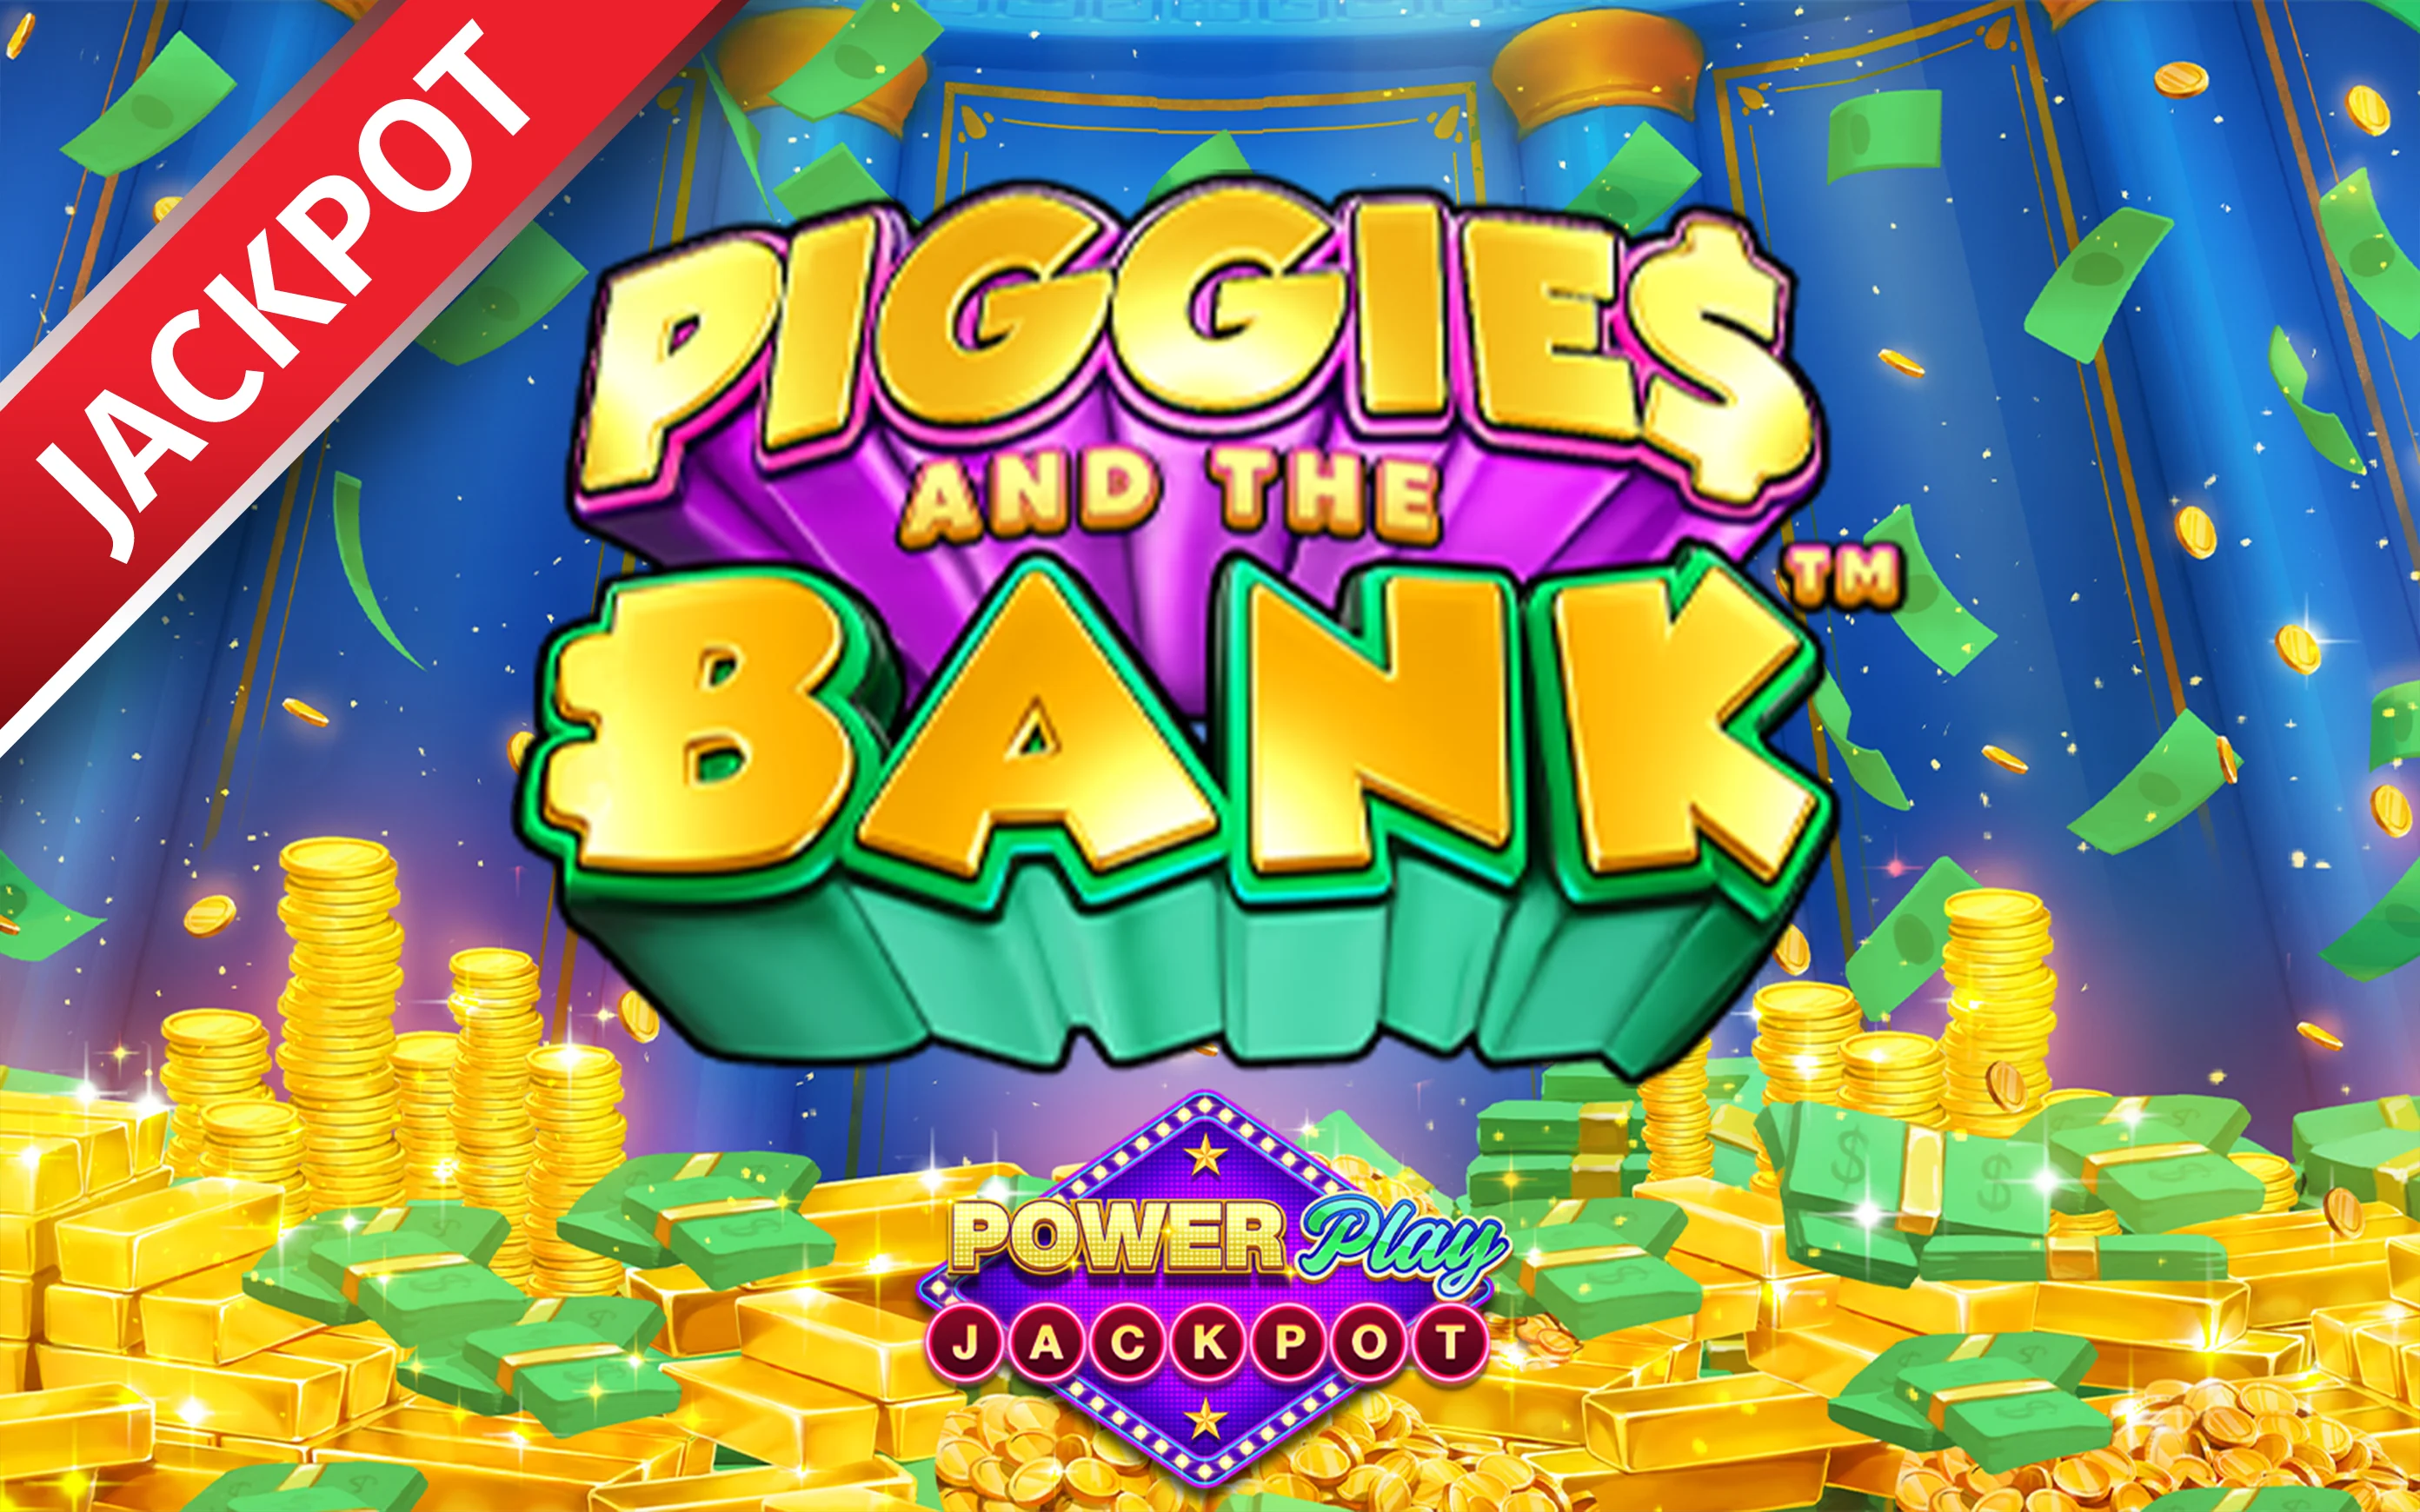 Spielen Sie Mega Fire Blaze: Piggies and the Bank™ PowerPlay Jackpot auf Starcasino.be-Online-Casino